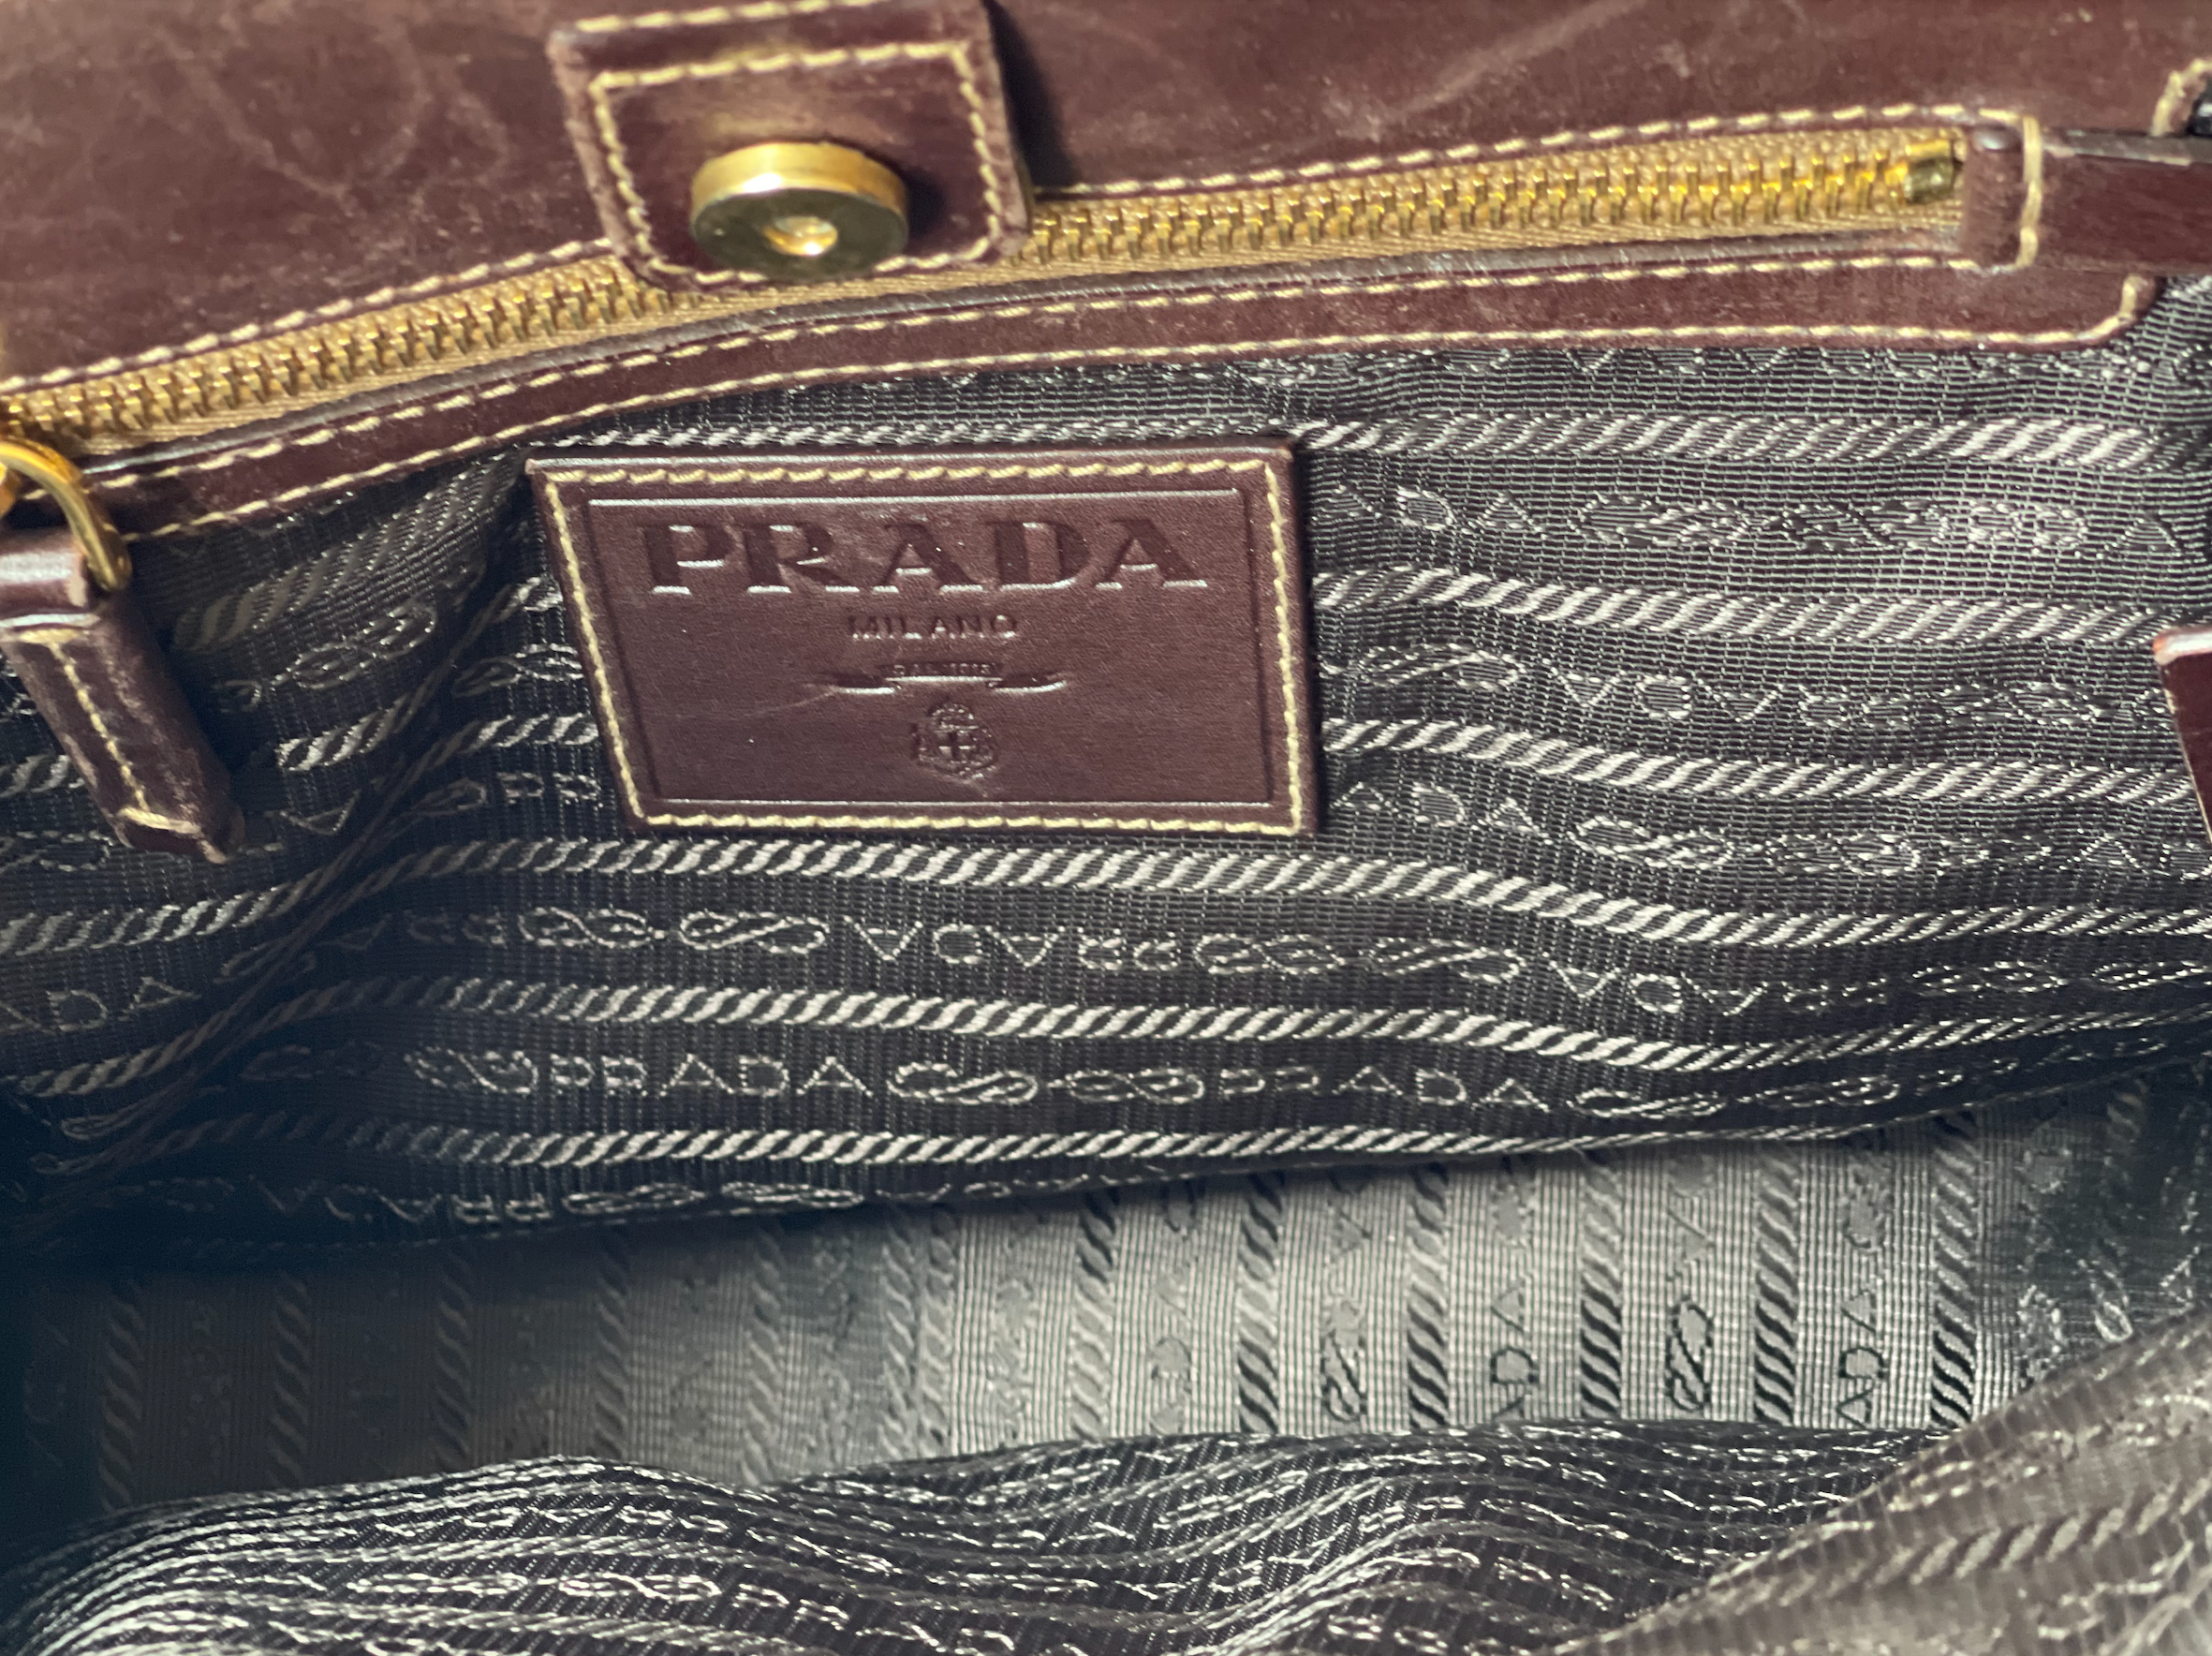 Brown Prada bag DAL 1813.